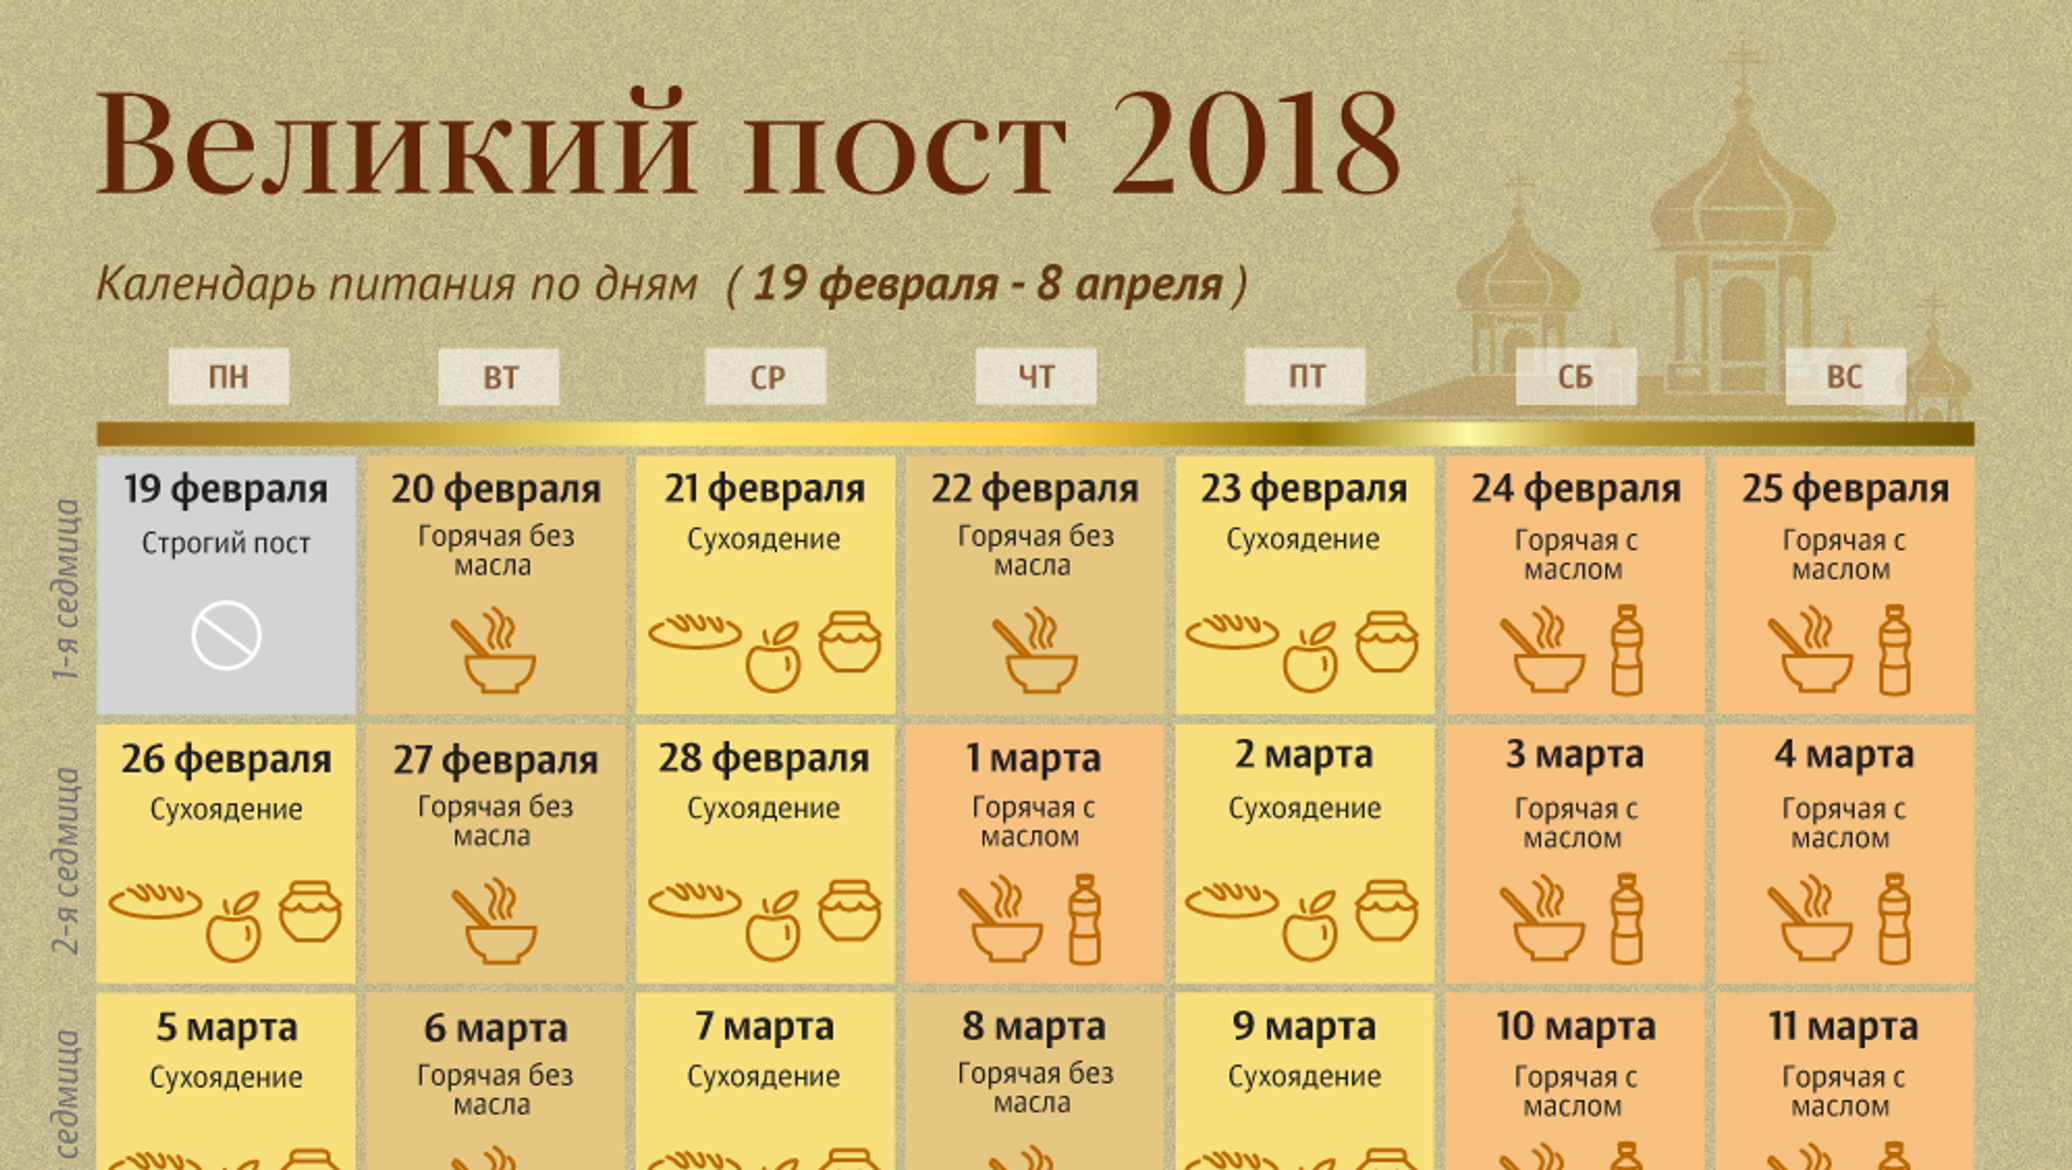 Сколько дней длится великий пост у православных